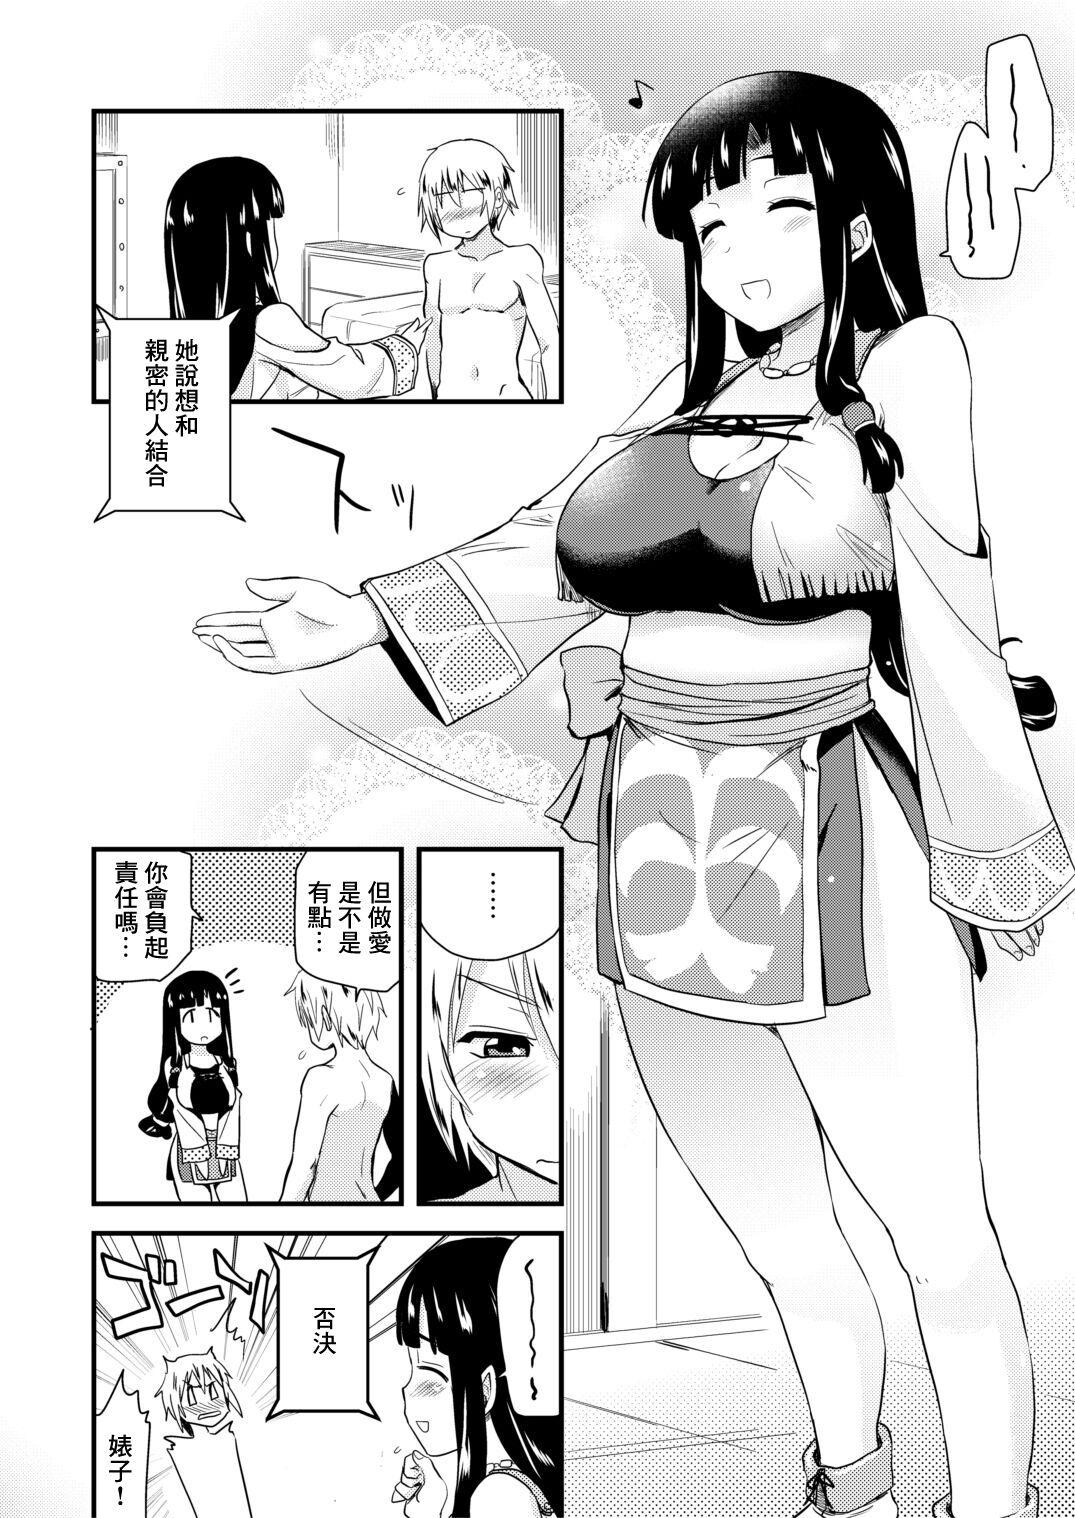 Muchimuchi Manga 14P 1